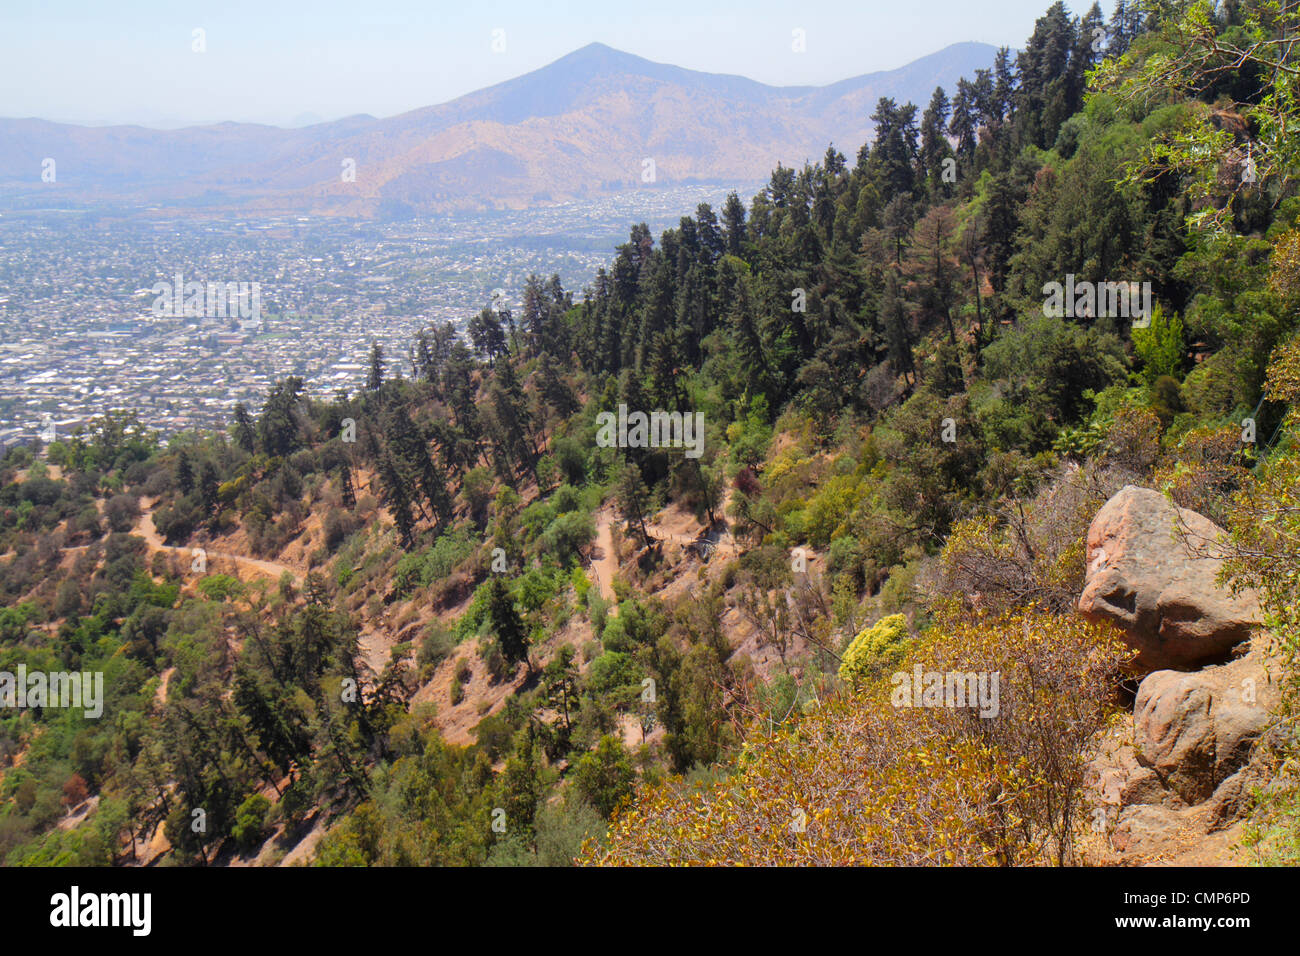 Santiago Cile,Cerro San Cristobal,Terraza Bellavista,vista da,Conchali,Cerra San Ignacio,Ande Montagne,colline,città,distanza,roccia,vegetazione,per Foto Stock